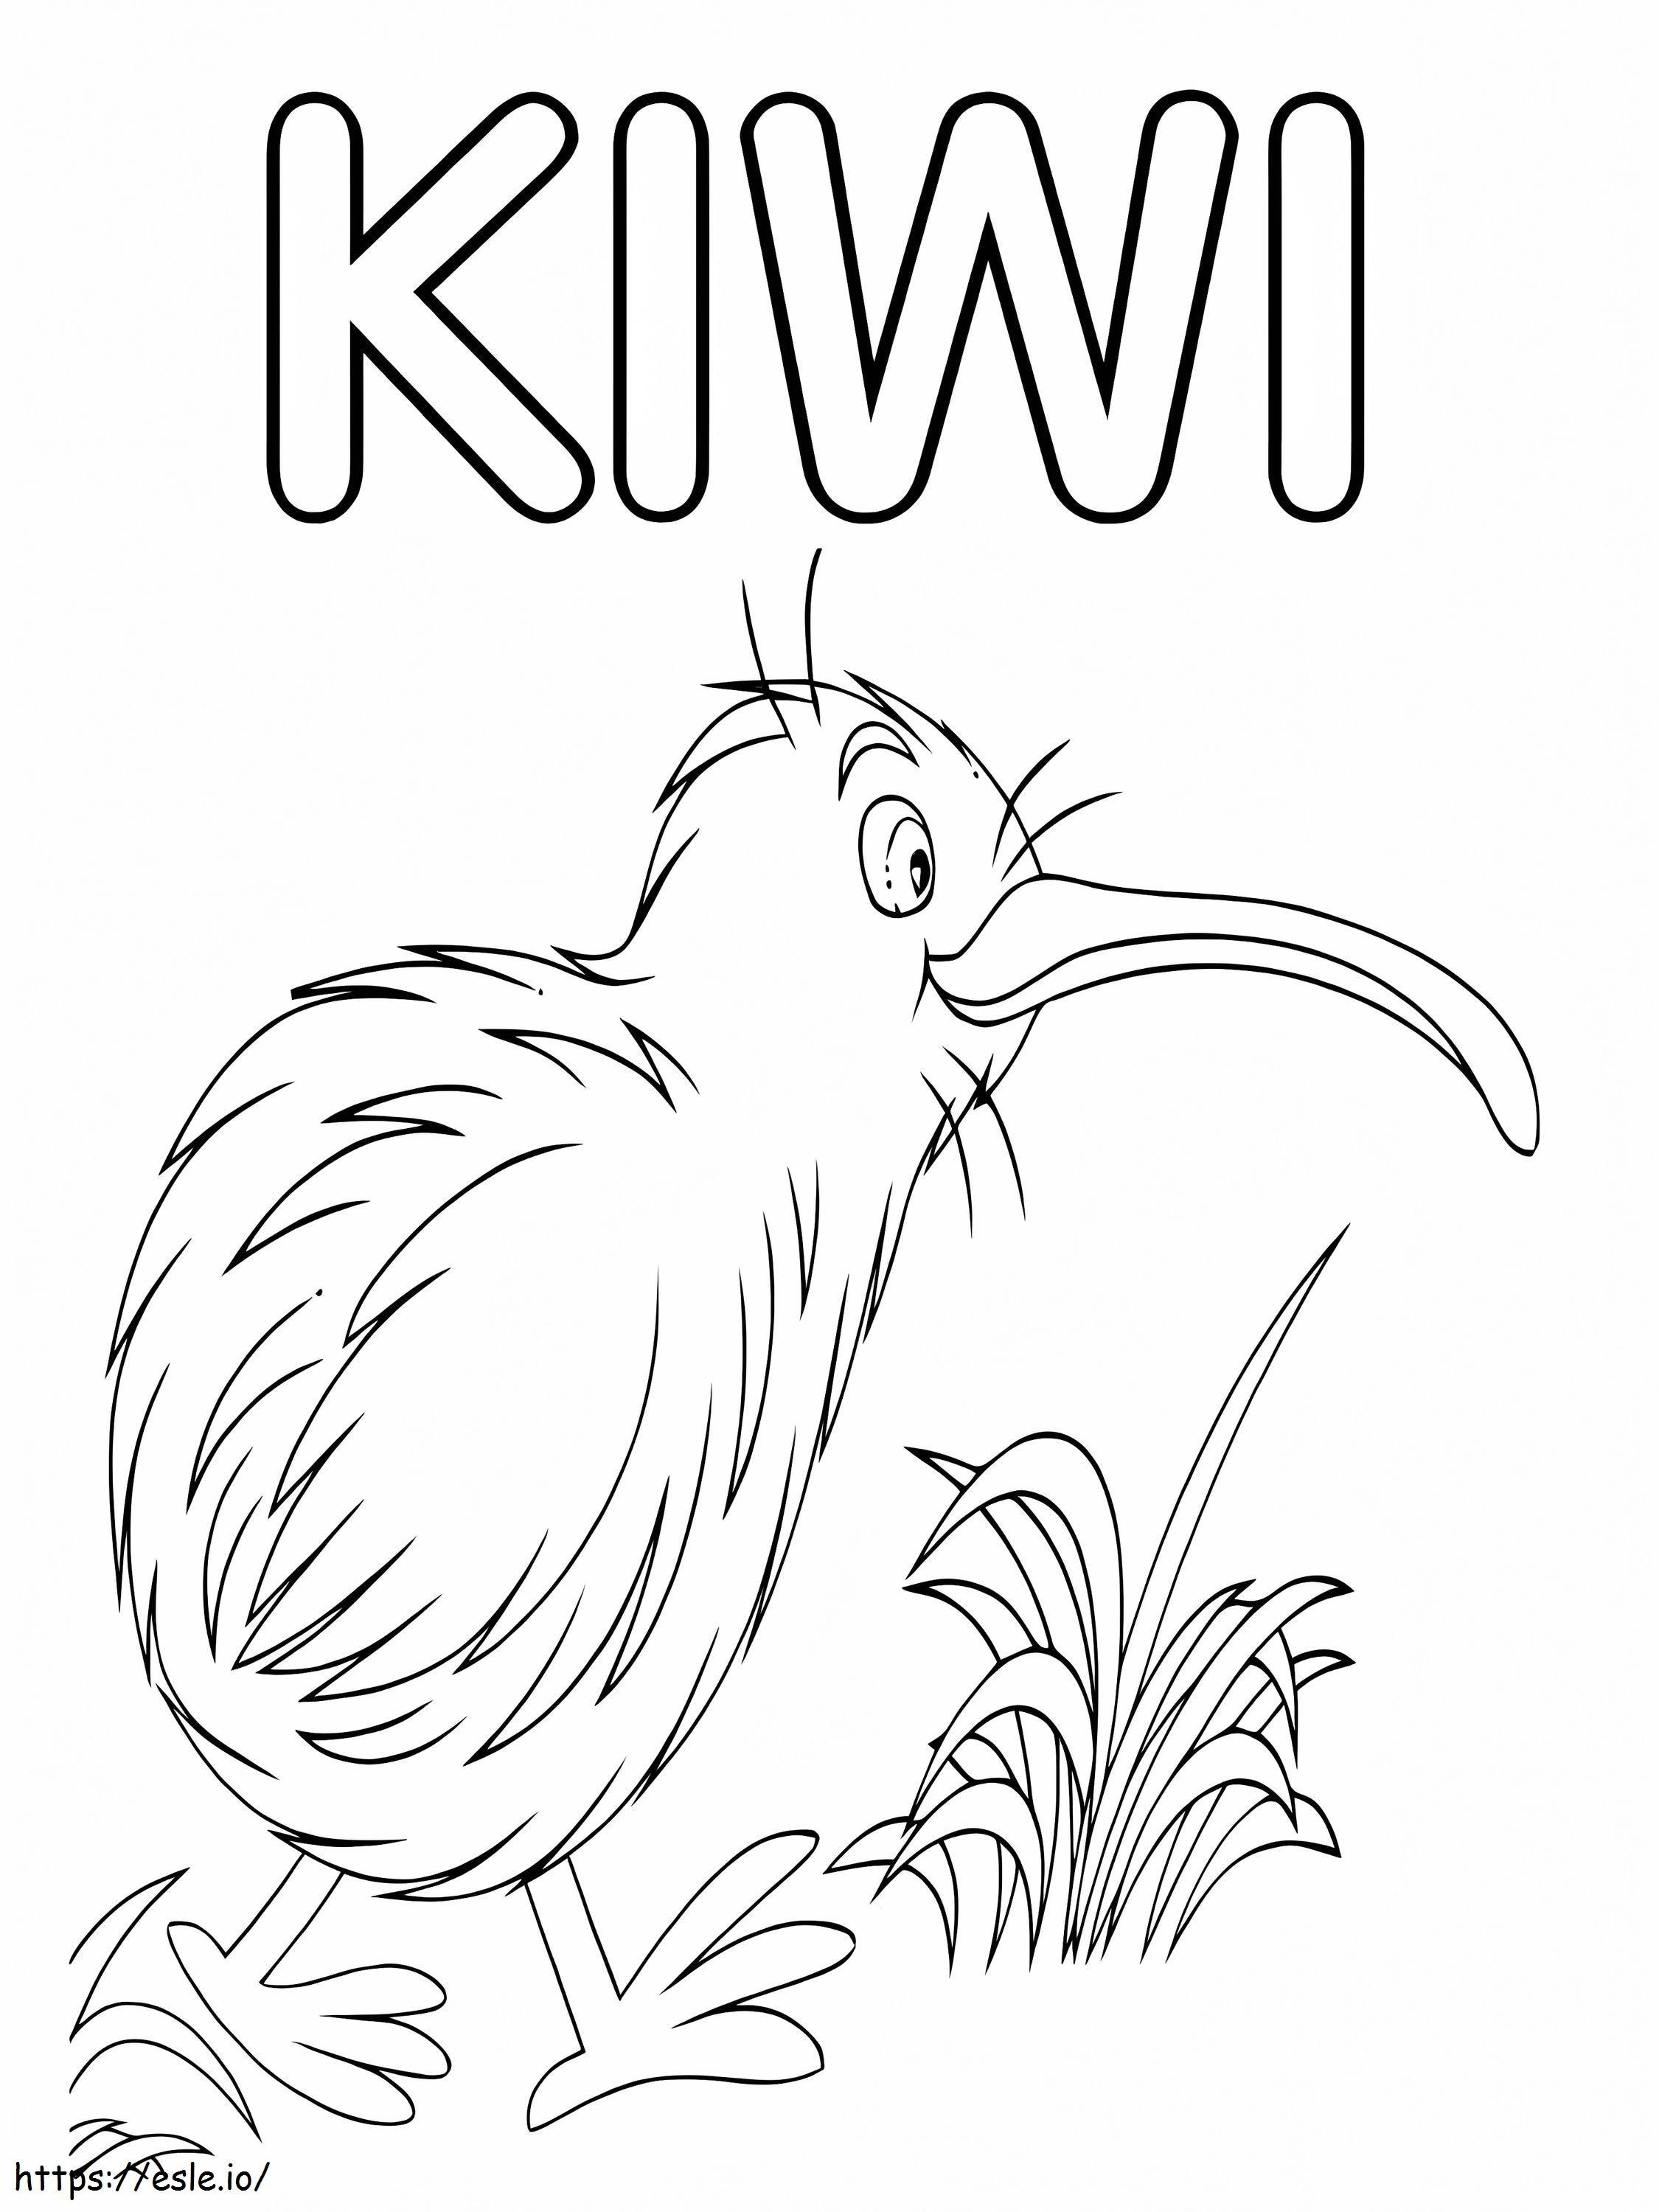 Kiwi Bird Walking Gambar Mewarnai